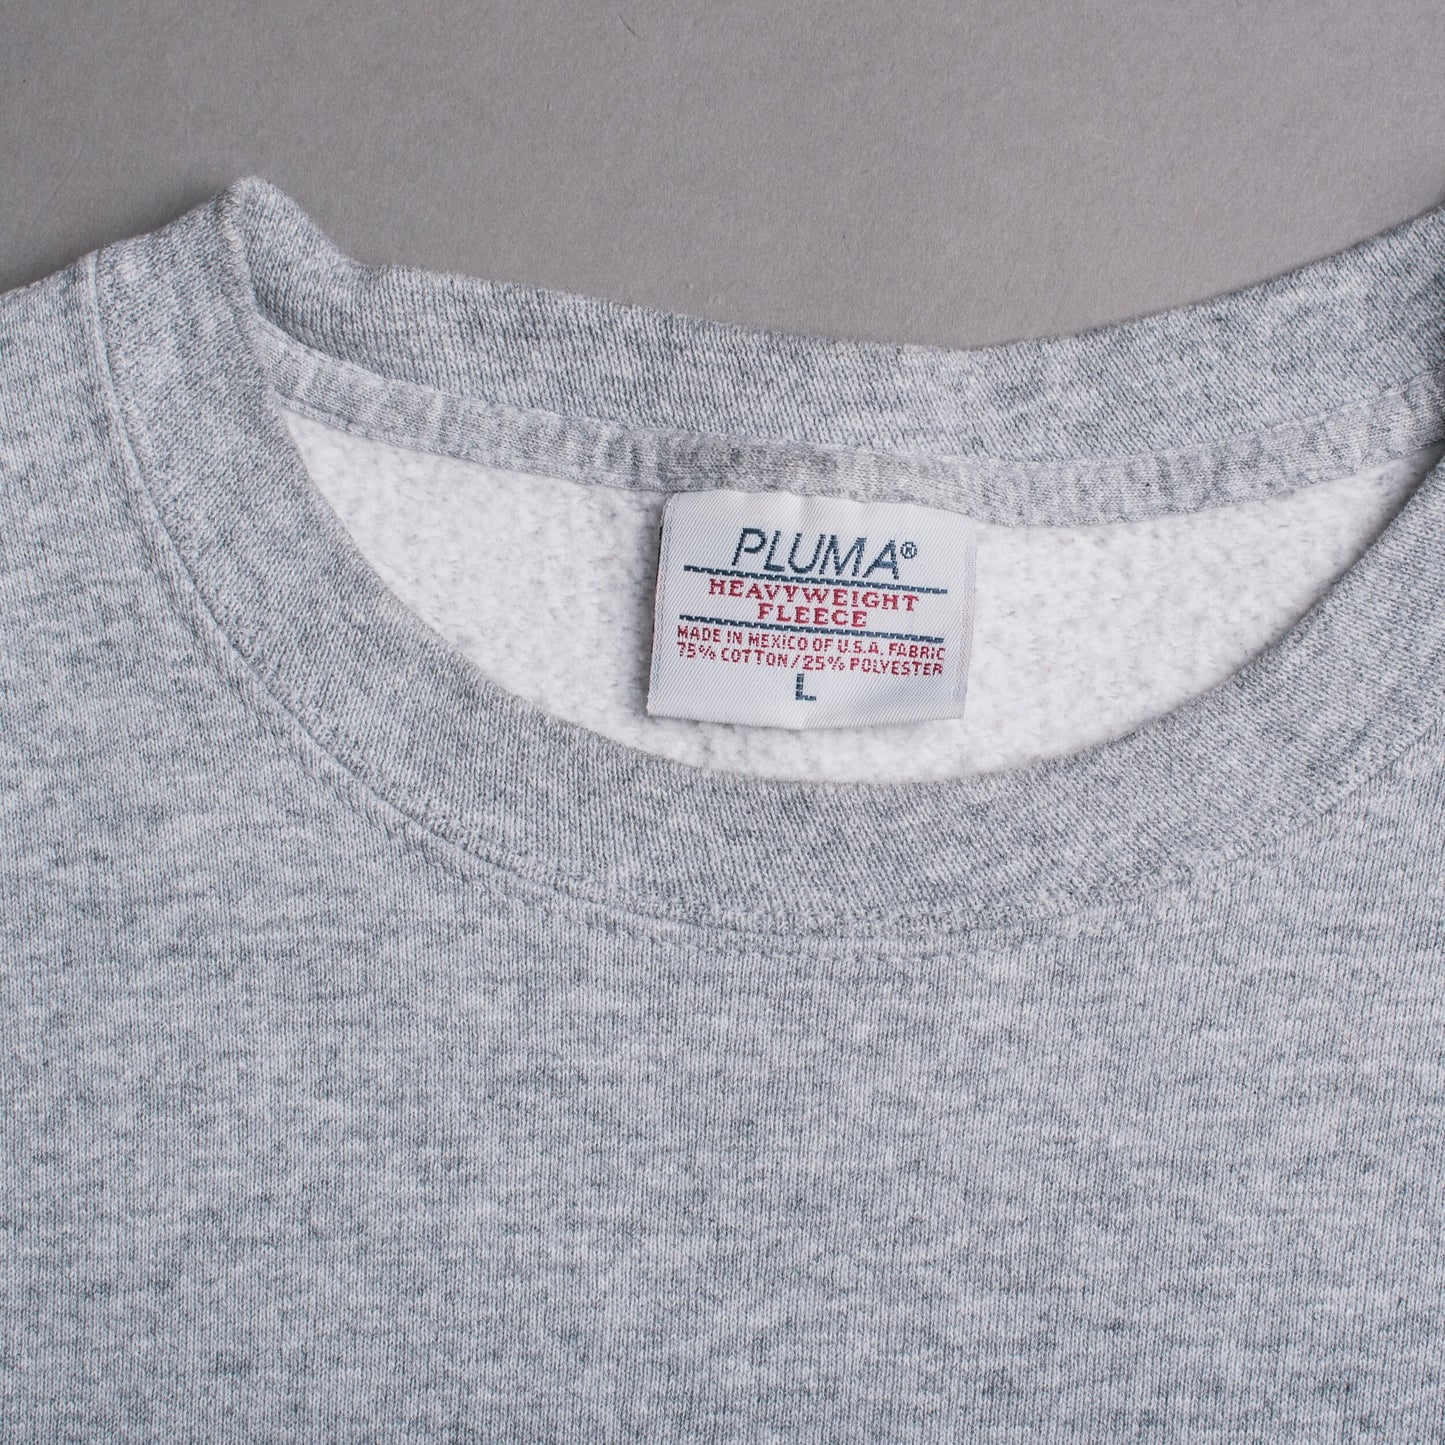 Vintage 90’s Bad Brains Embroidery Sweatshirt